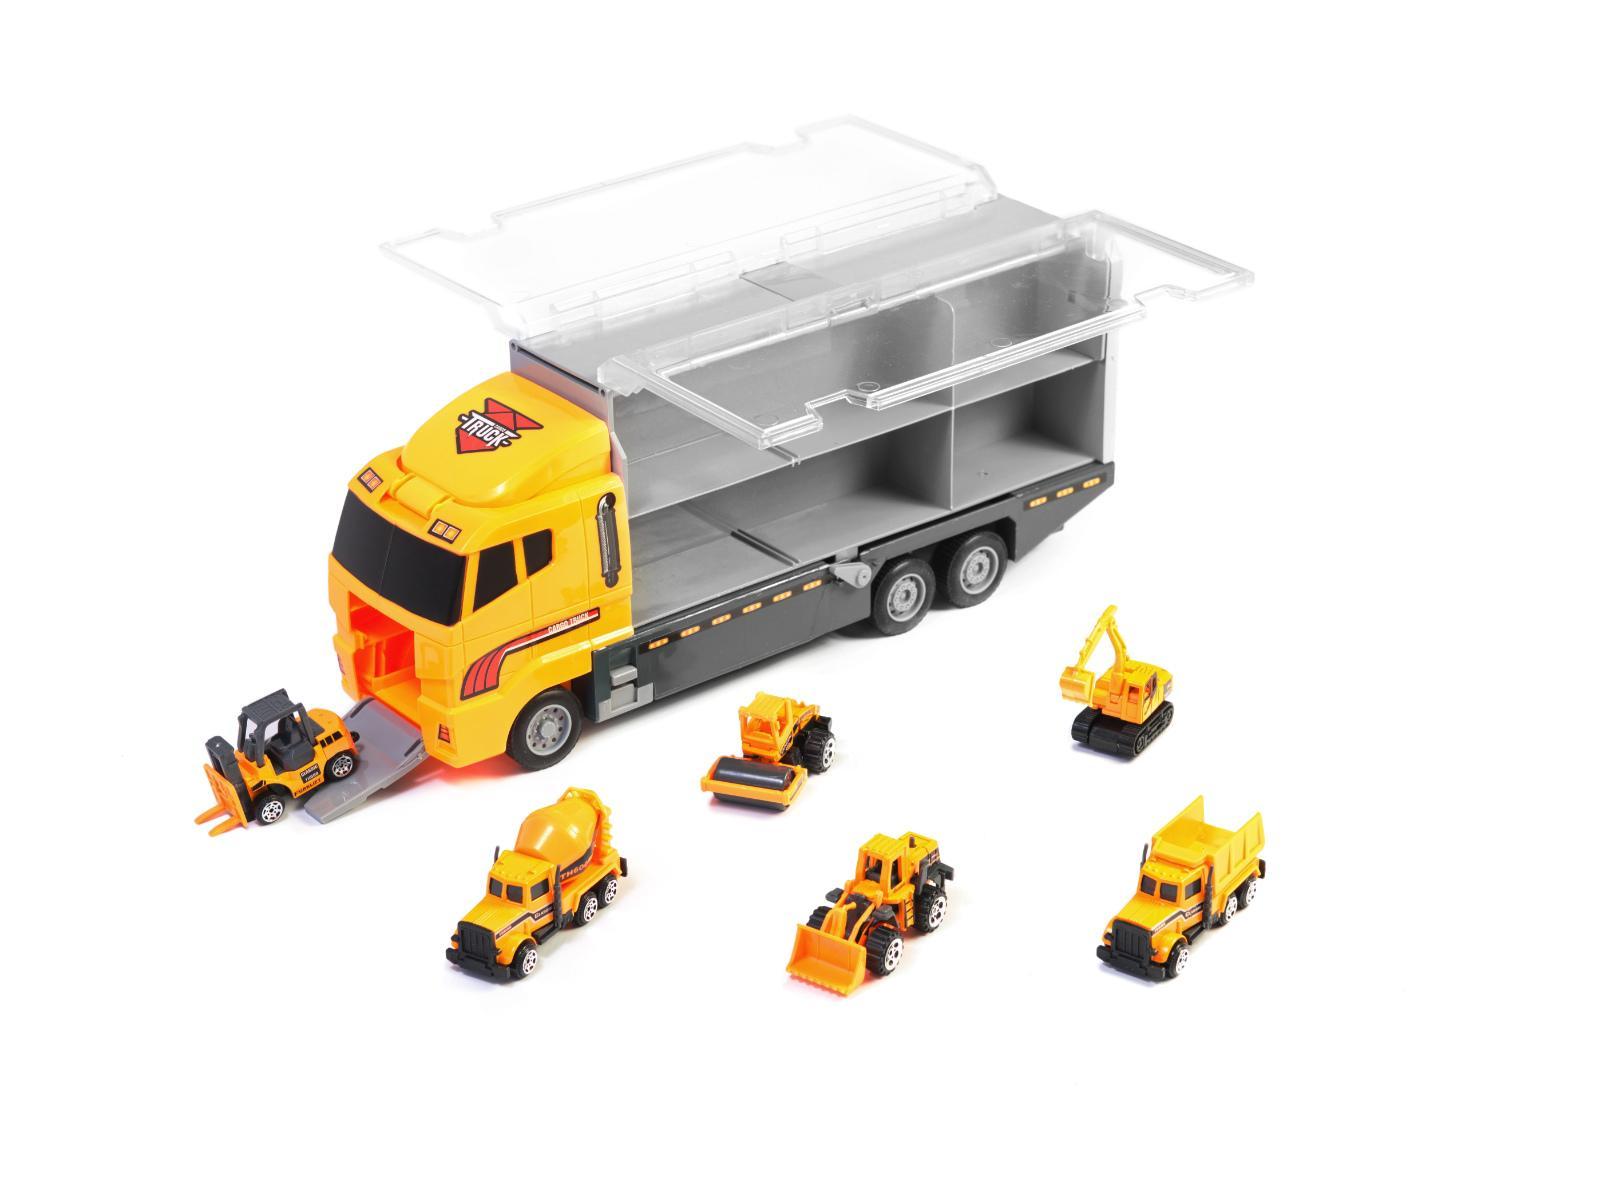 Transporter ciężarówka TIR wyrzutnia + metalowe auta maszyny budowlane zabawka dla dzieci 15x10x36cm nr. 2